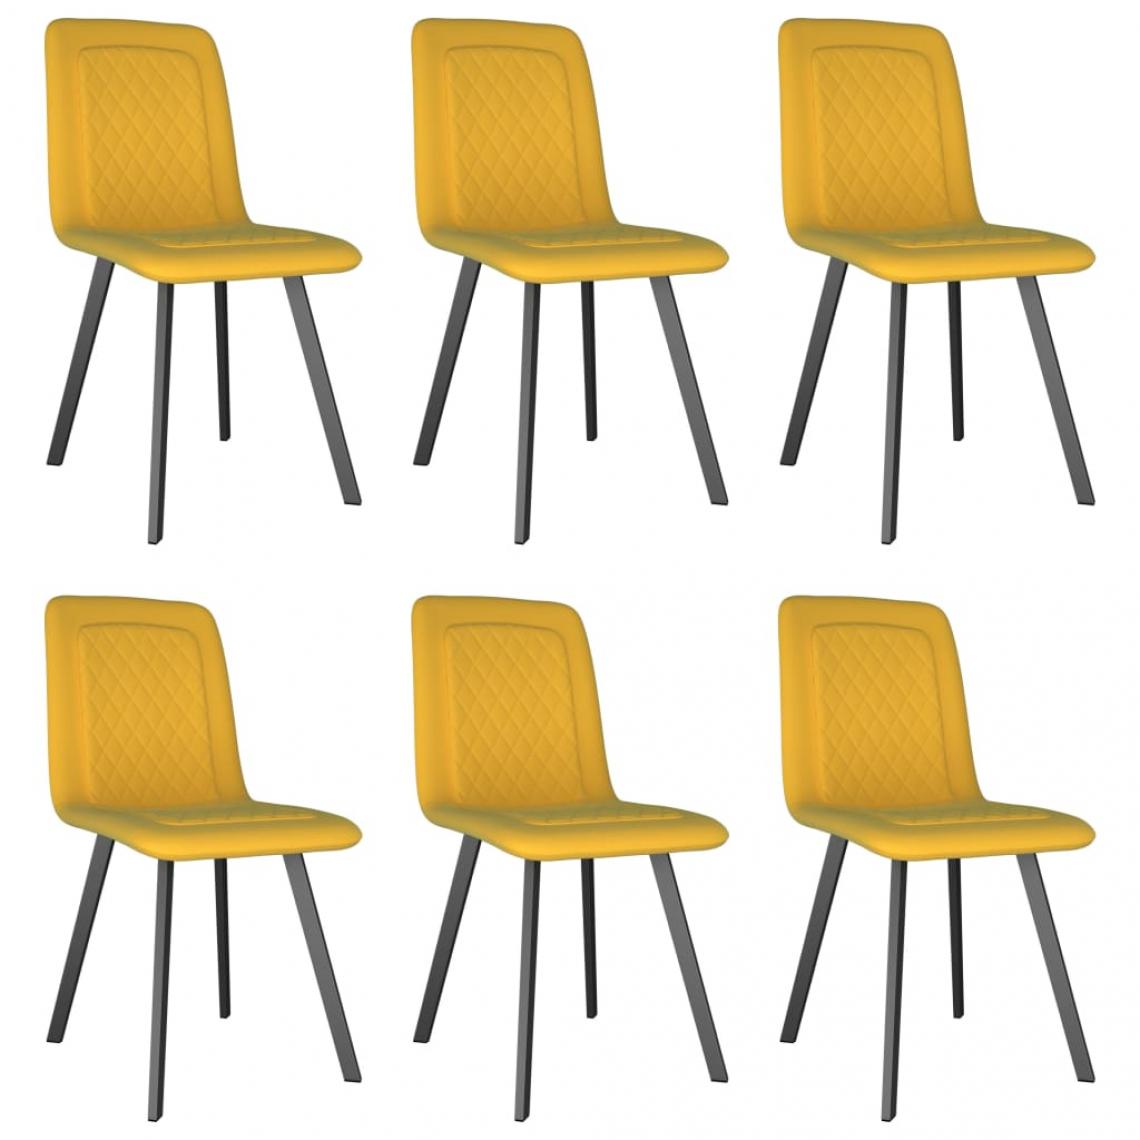 Decoshop26 - Lot de 6 chaises de salle à manger cuisine design moderne velours jaune CDS022547 - Chaises